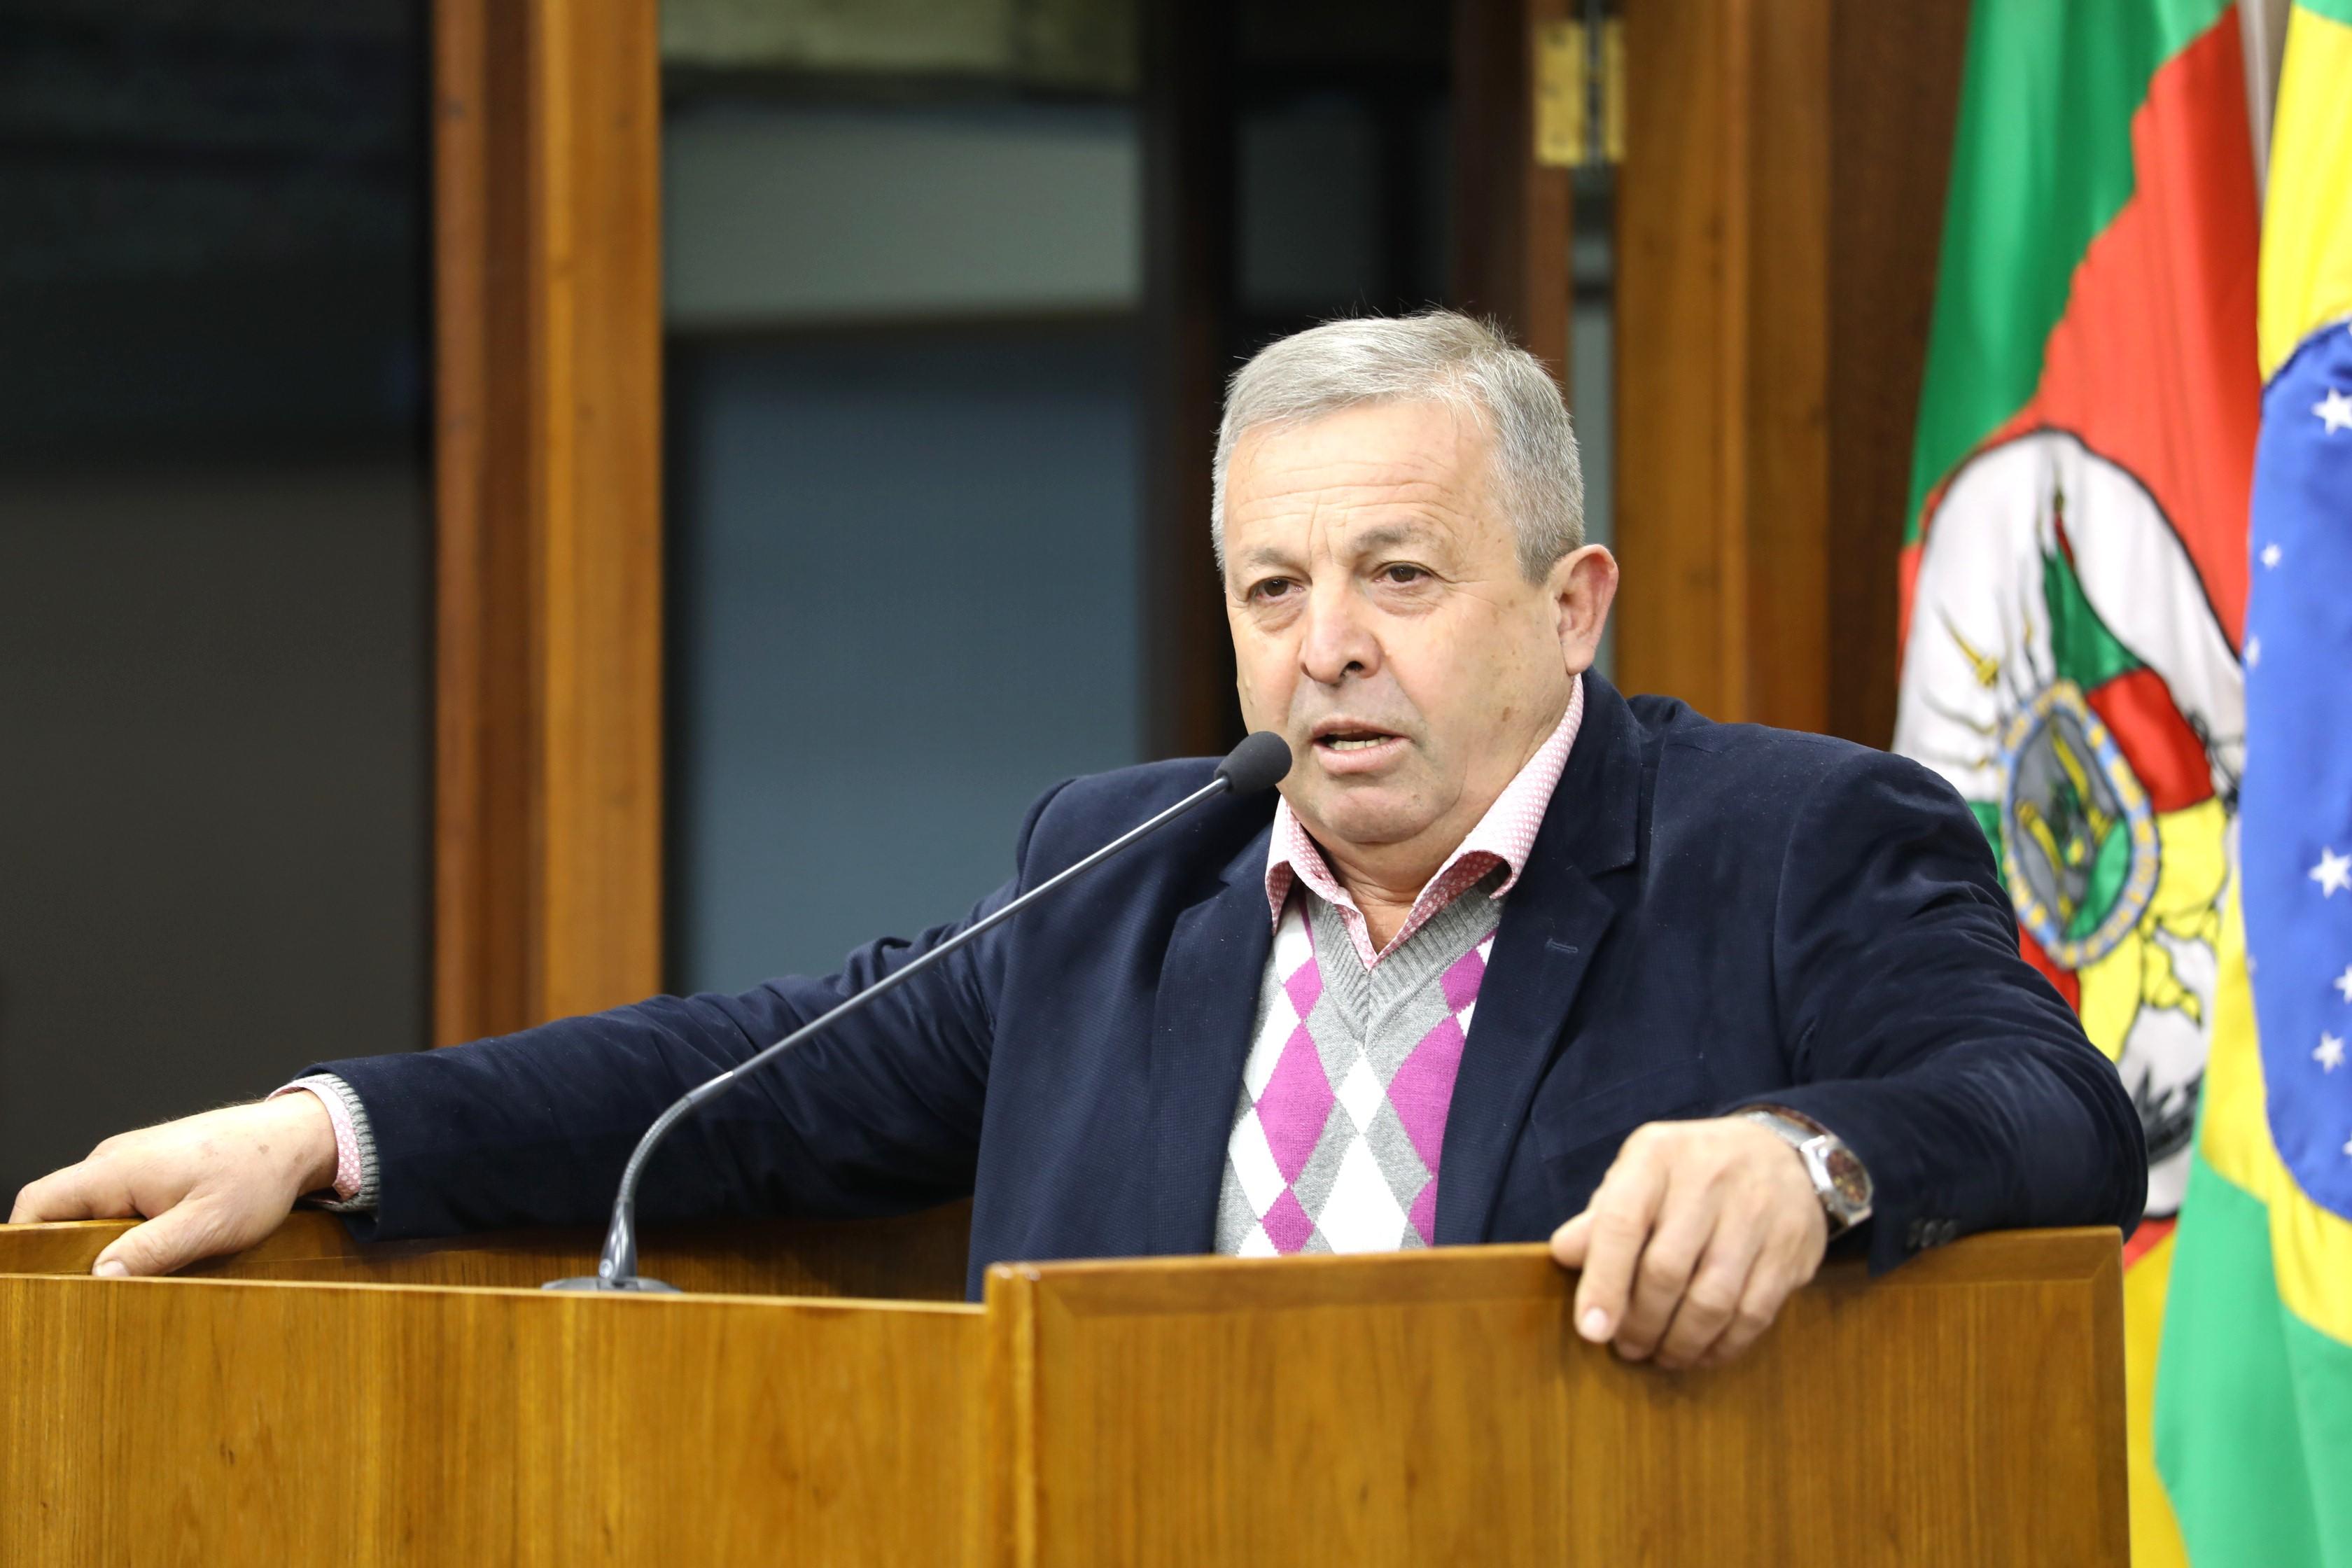 Velocino Uez retorna ao Legislativo Municipal e reflete sobre desafios em Caxias do Sul